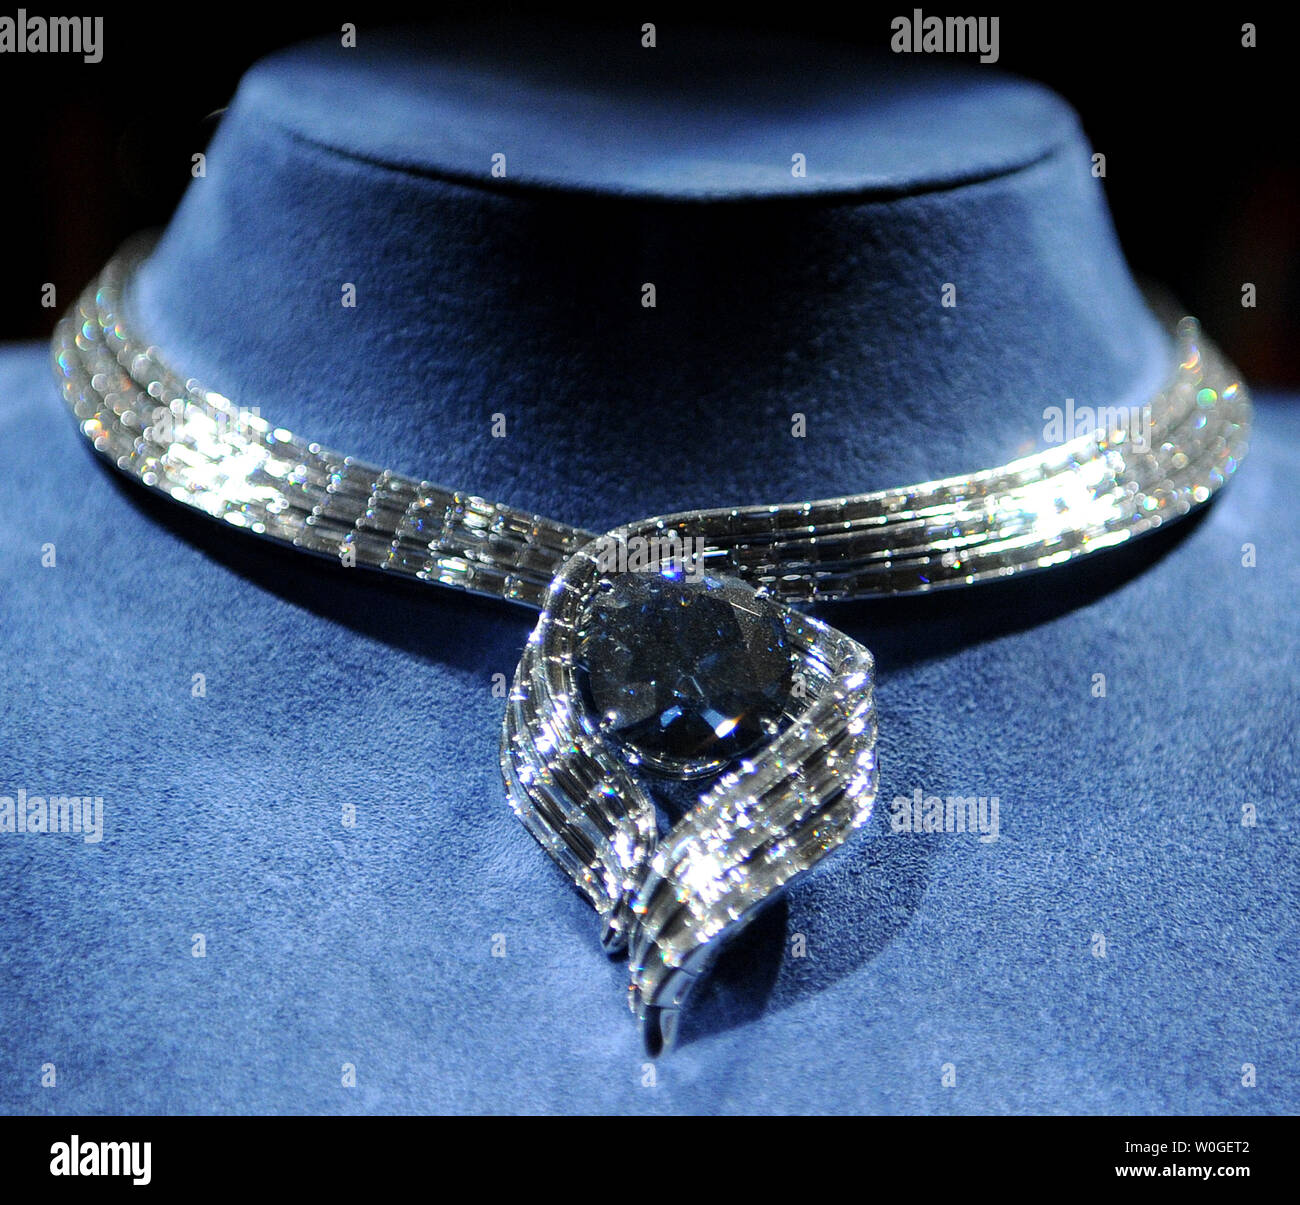 The hope diamond Banque de photographies et d'images à haute résolution -  Alamy